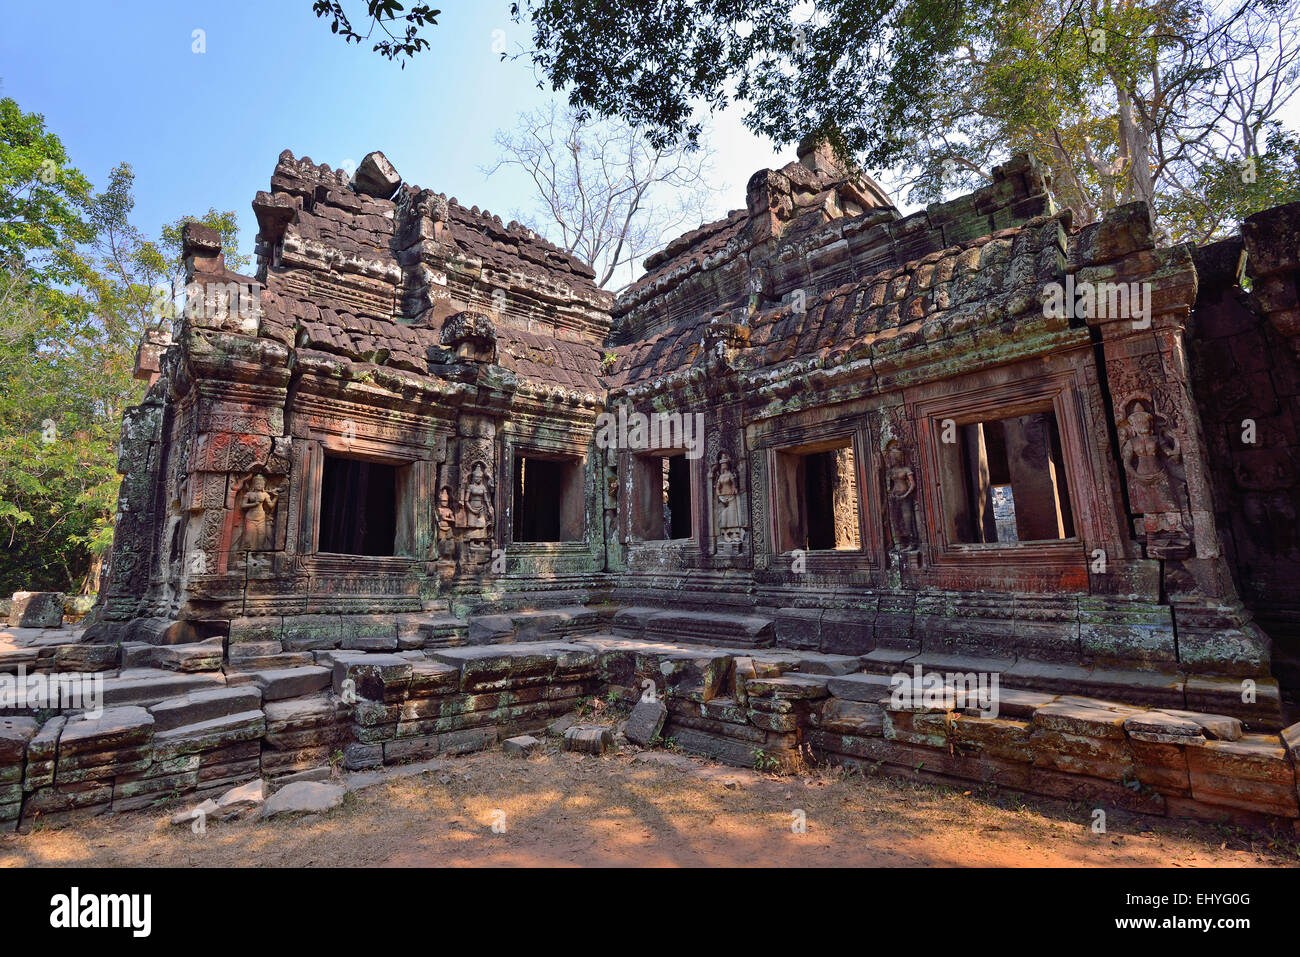 Banteay Kdei Tempel in Siem Reap, Kambodscha. Keine Menschen im Bild mit blauem Himmel. Stockfoto